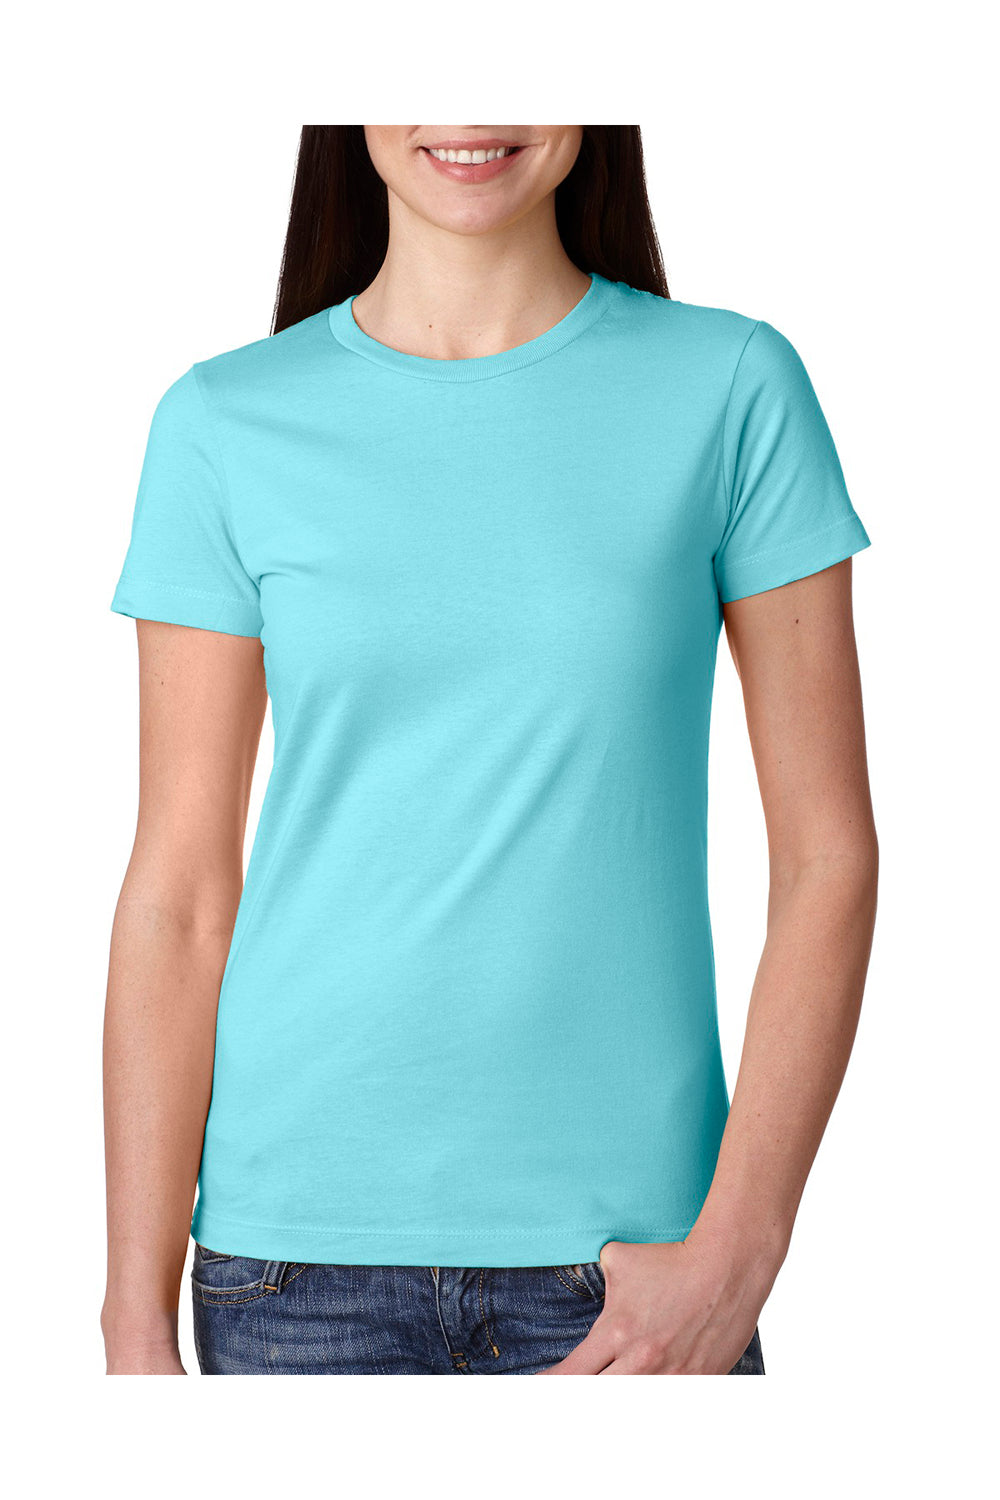 Next Level N3900 Womens Boyfriend Fine Jersey Short Sleeve Crewneck T-Shirt Cancun Blue Front